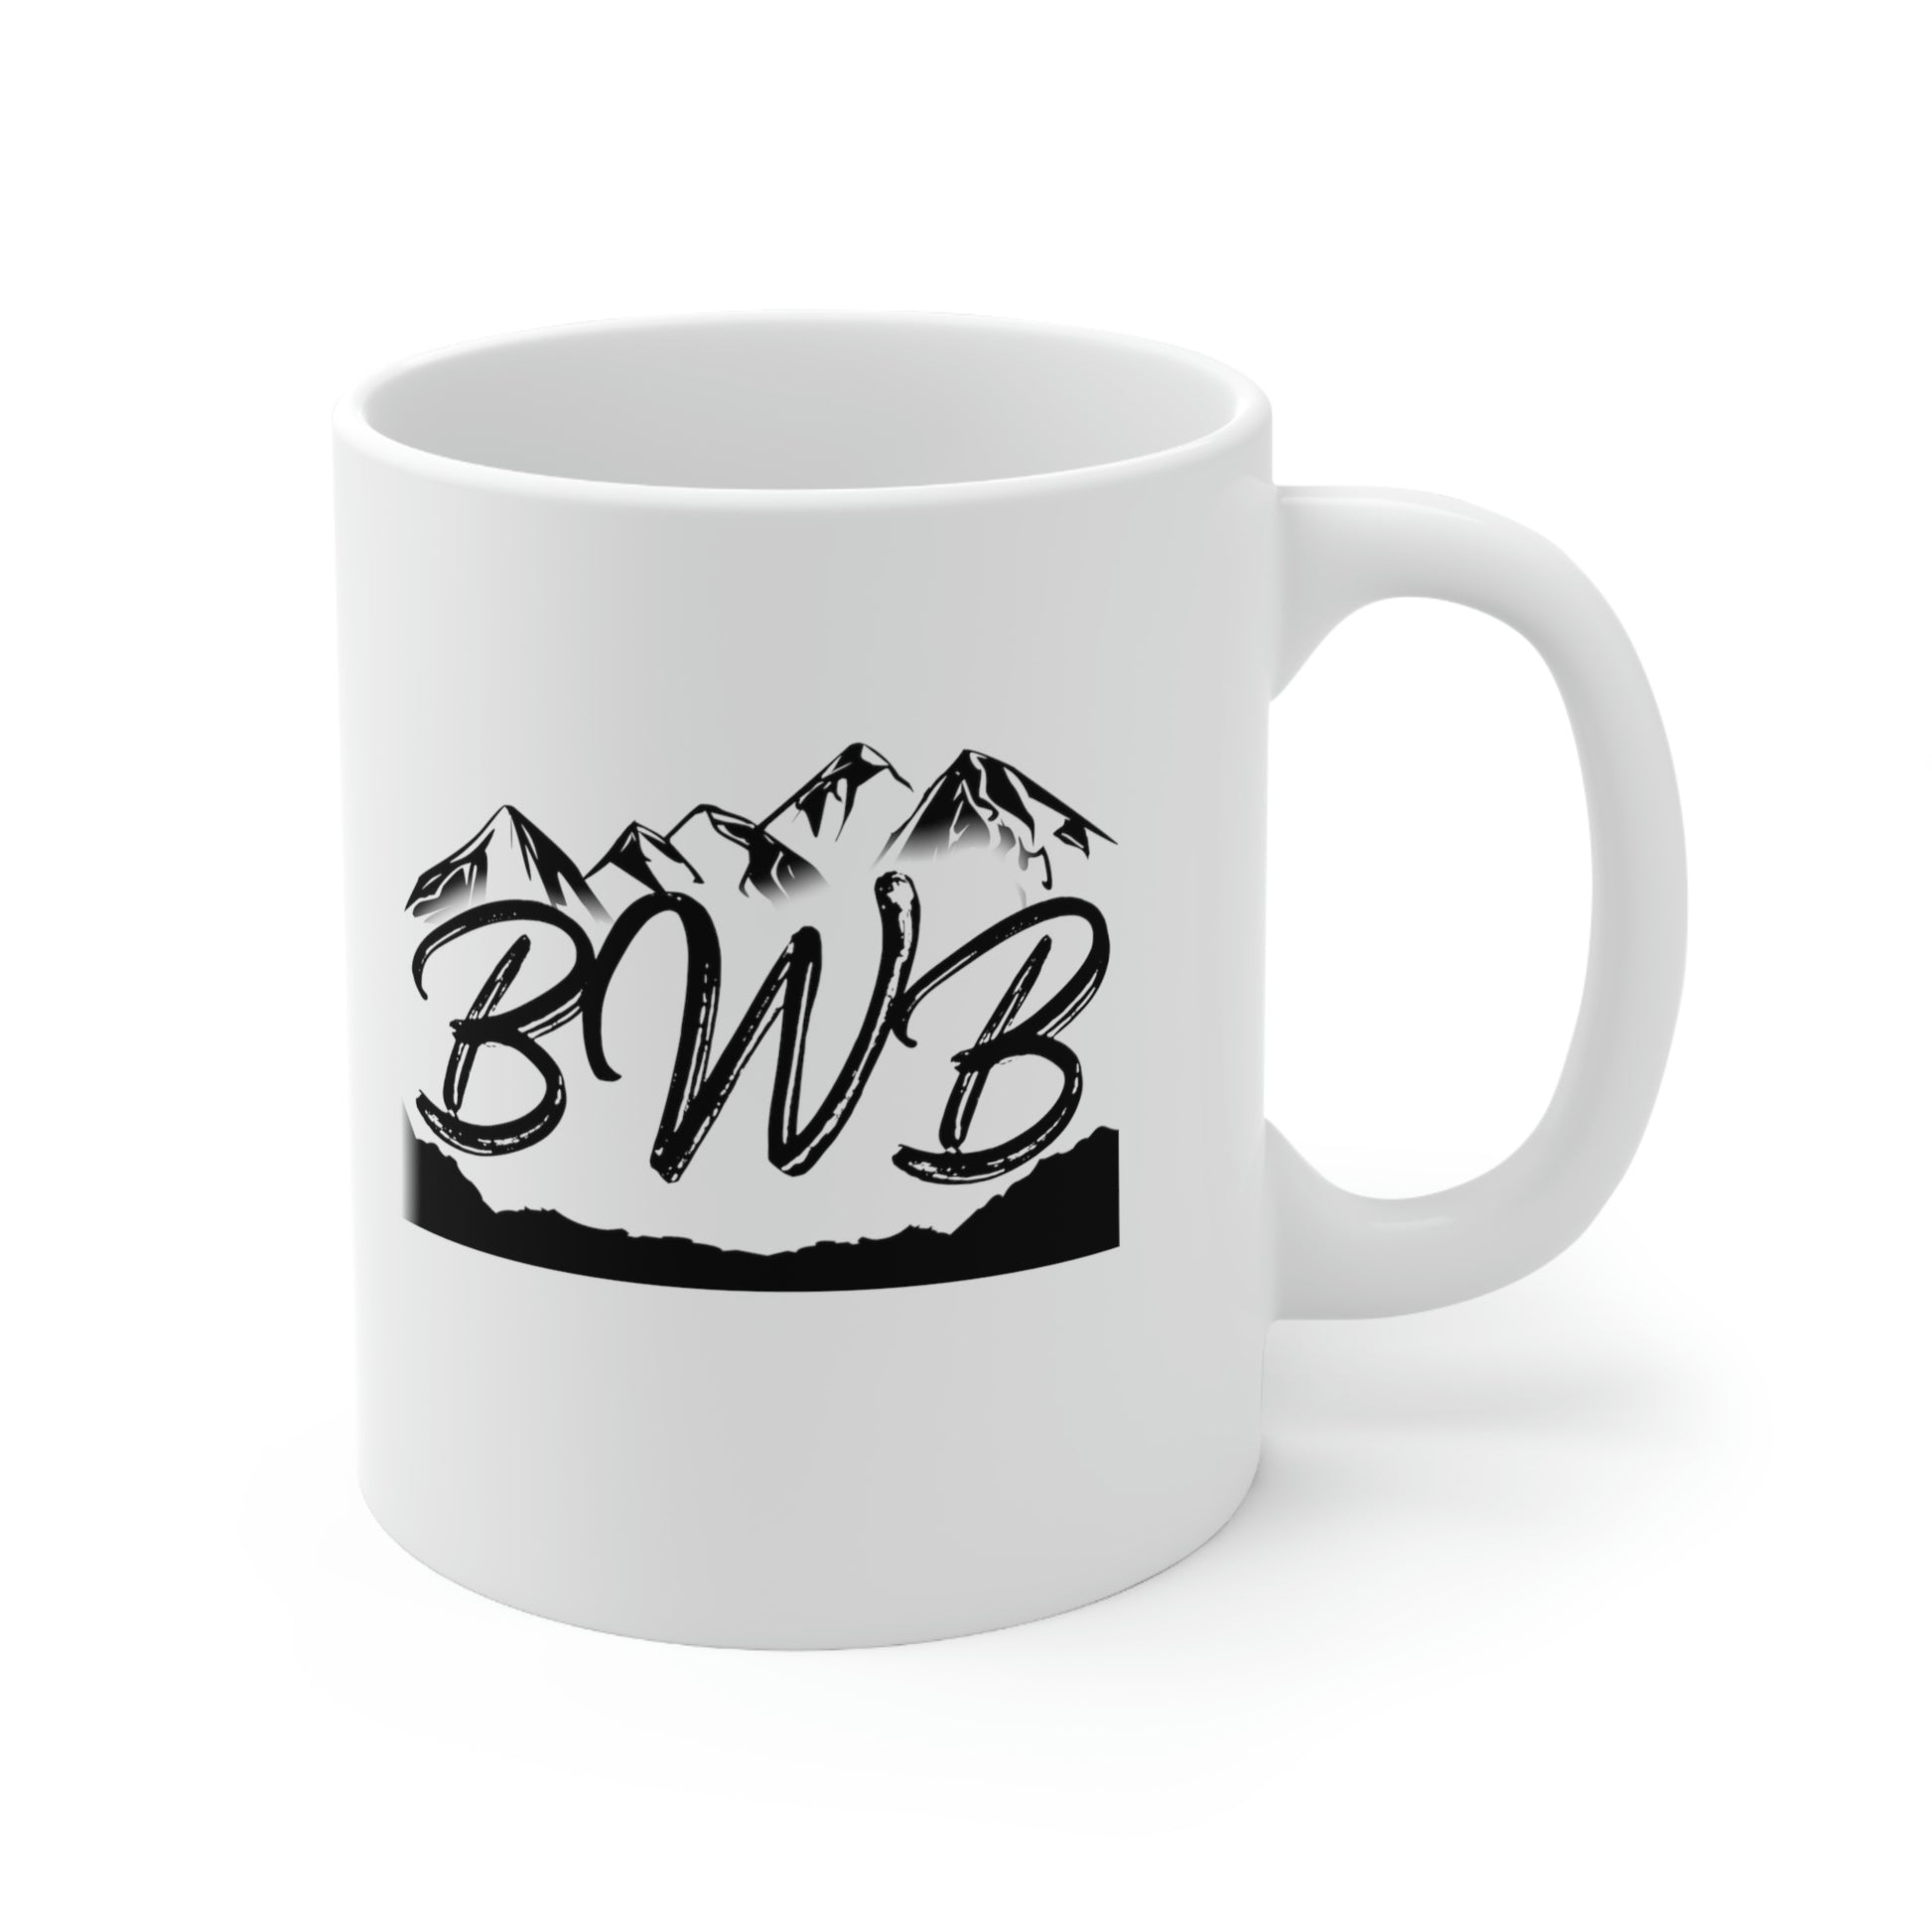 FJB Mug - Backwoods Branding Co.